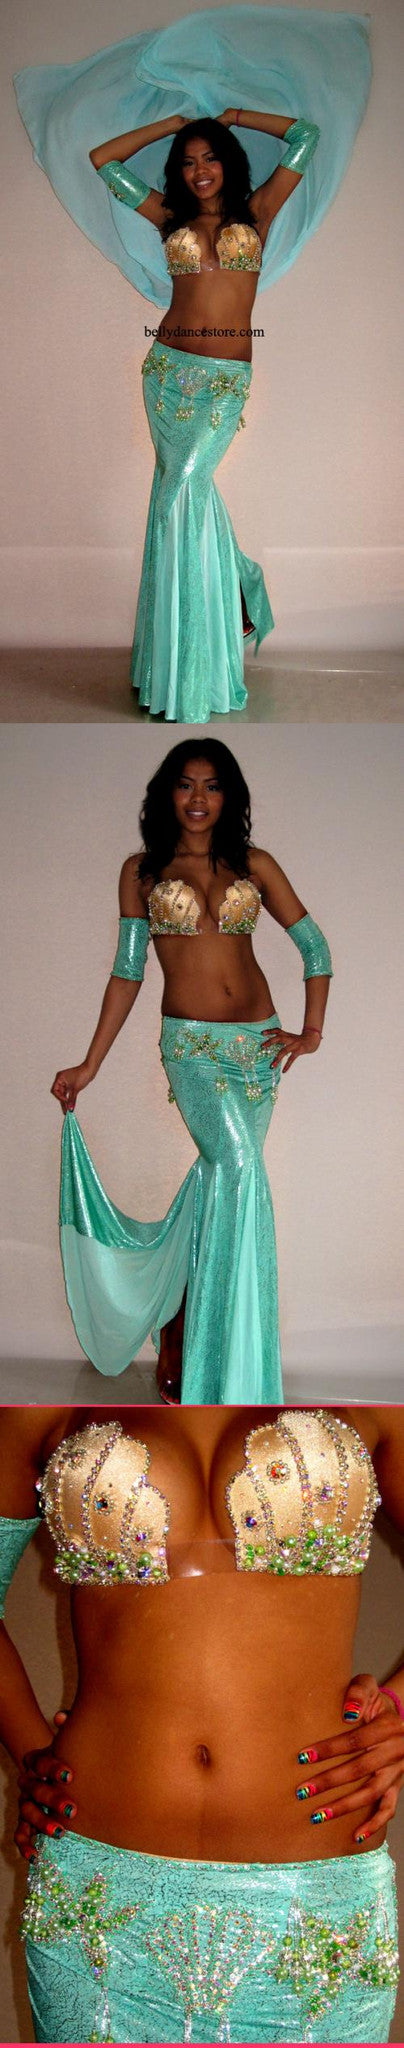 Eman Zaki Mermaid